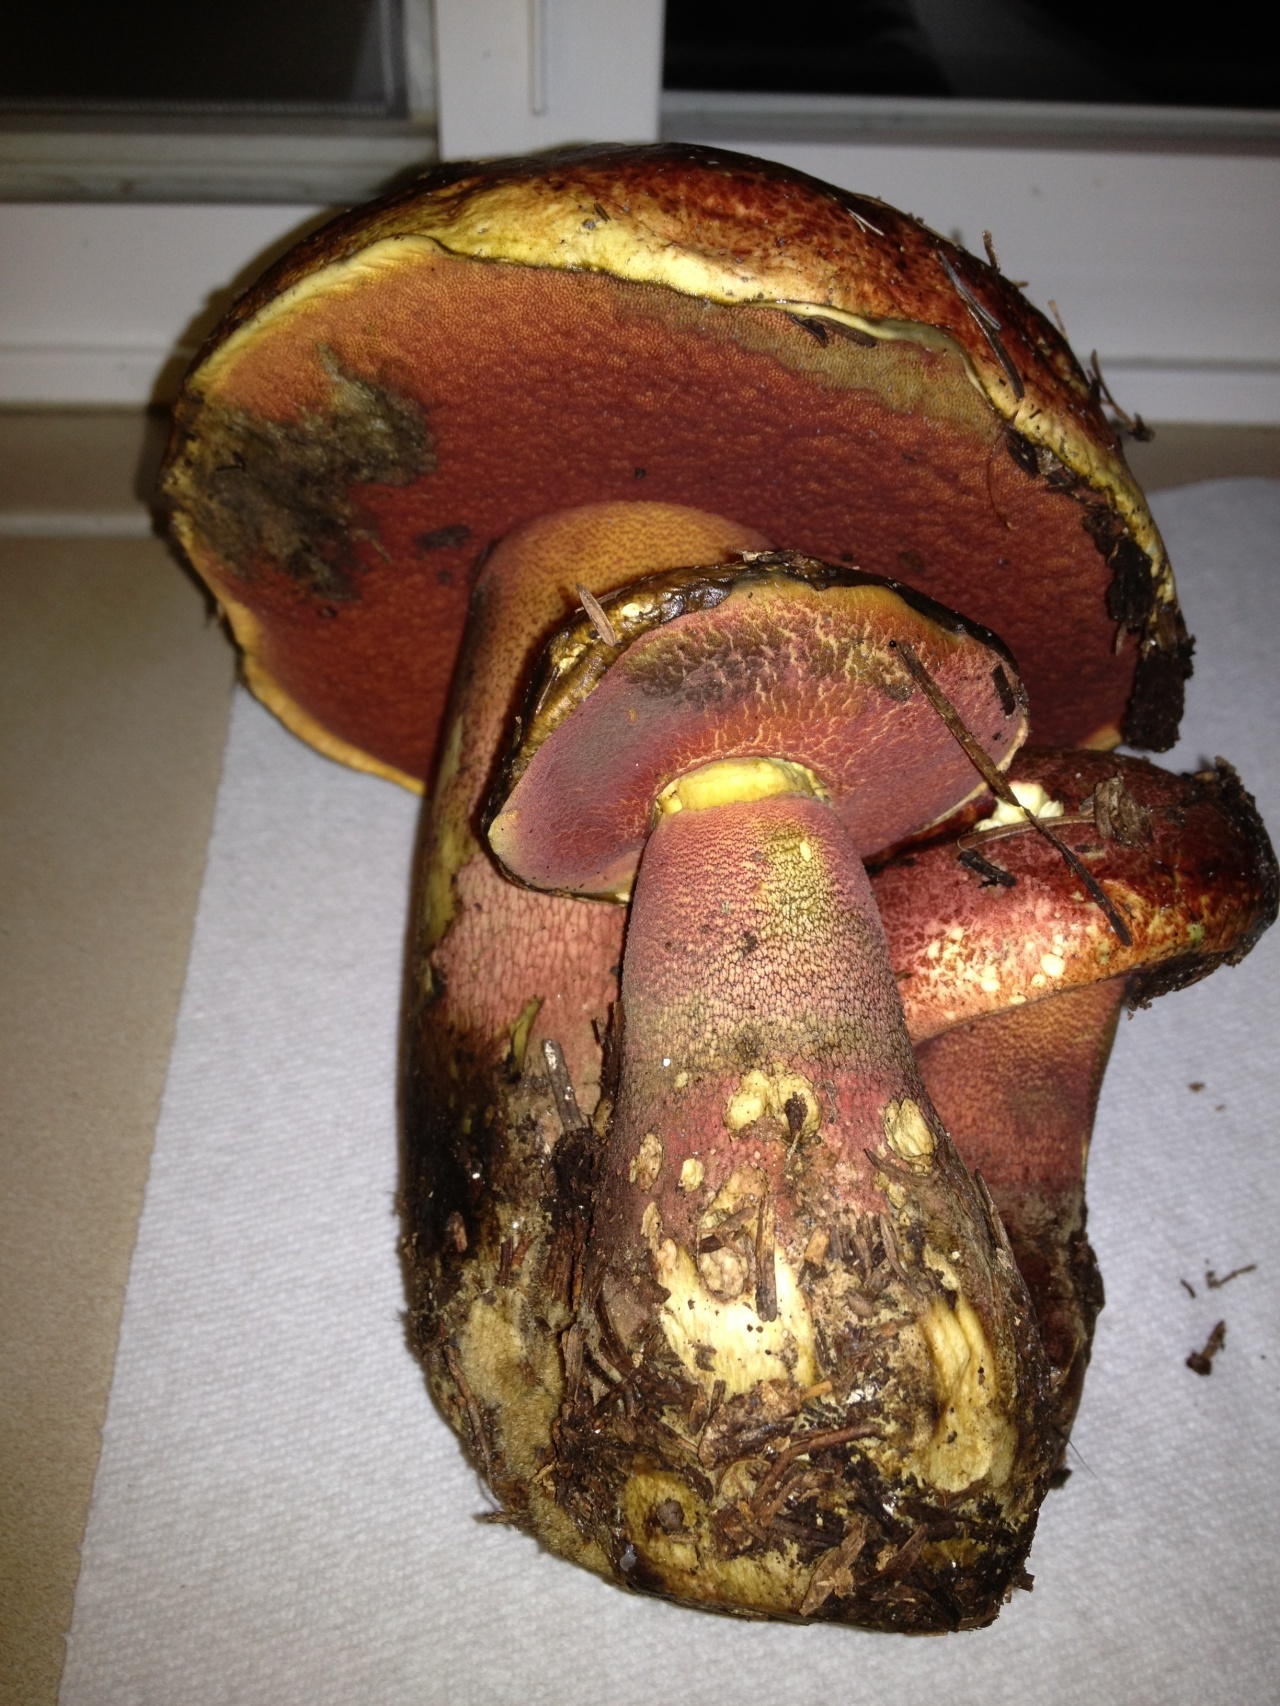 Боровик (гриб) – описание, виды, где растет, фото